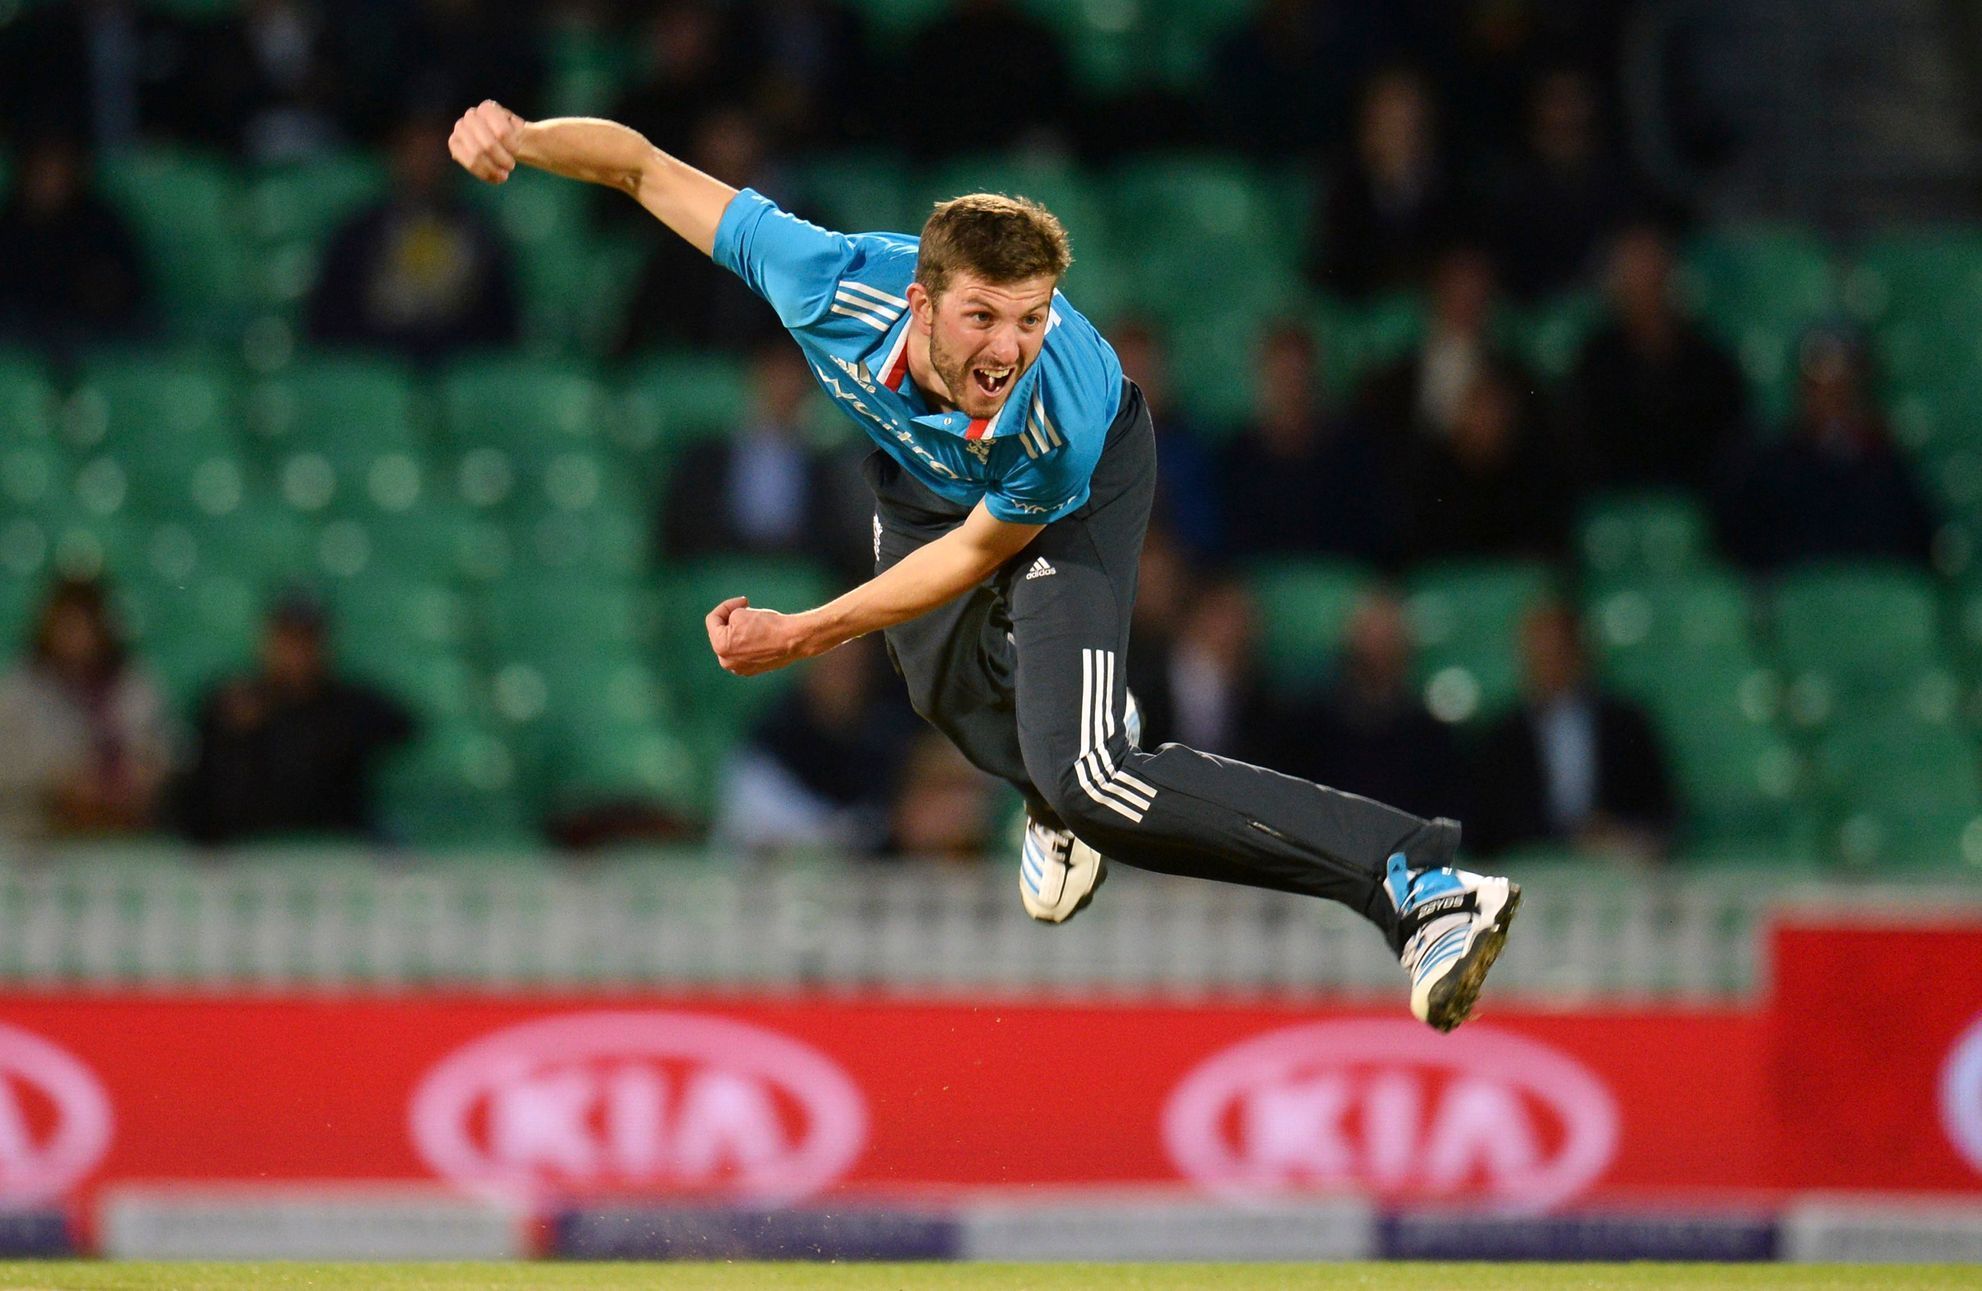 Nejlepší fotky roku 2014: Harry Gurney, kriket